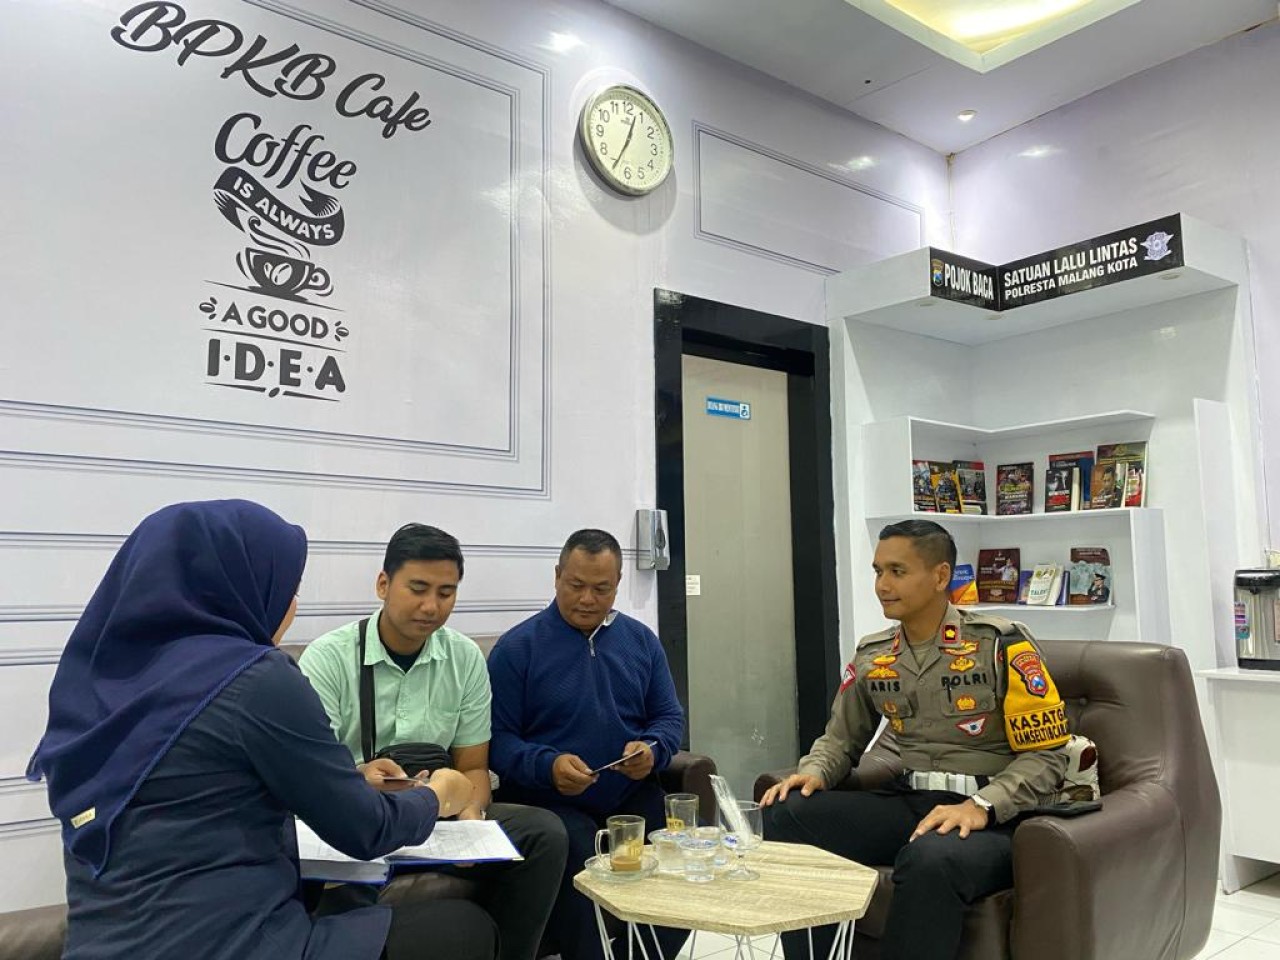 Polresta Malang Kota Kenalkan BPKB Cafe, Bisa Urus Surat Kendaraan sambil Ngopi